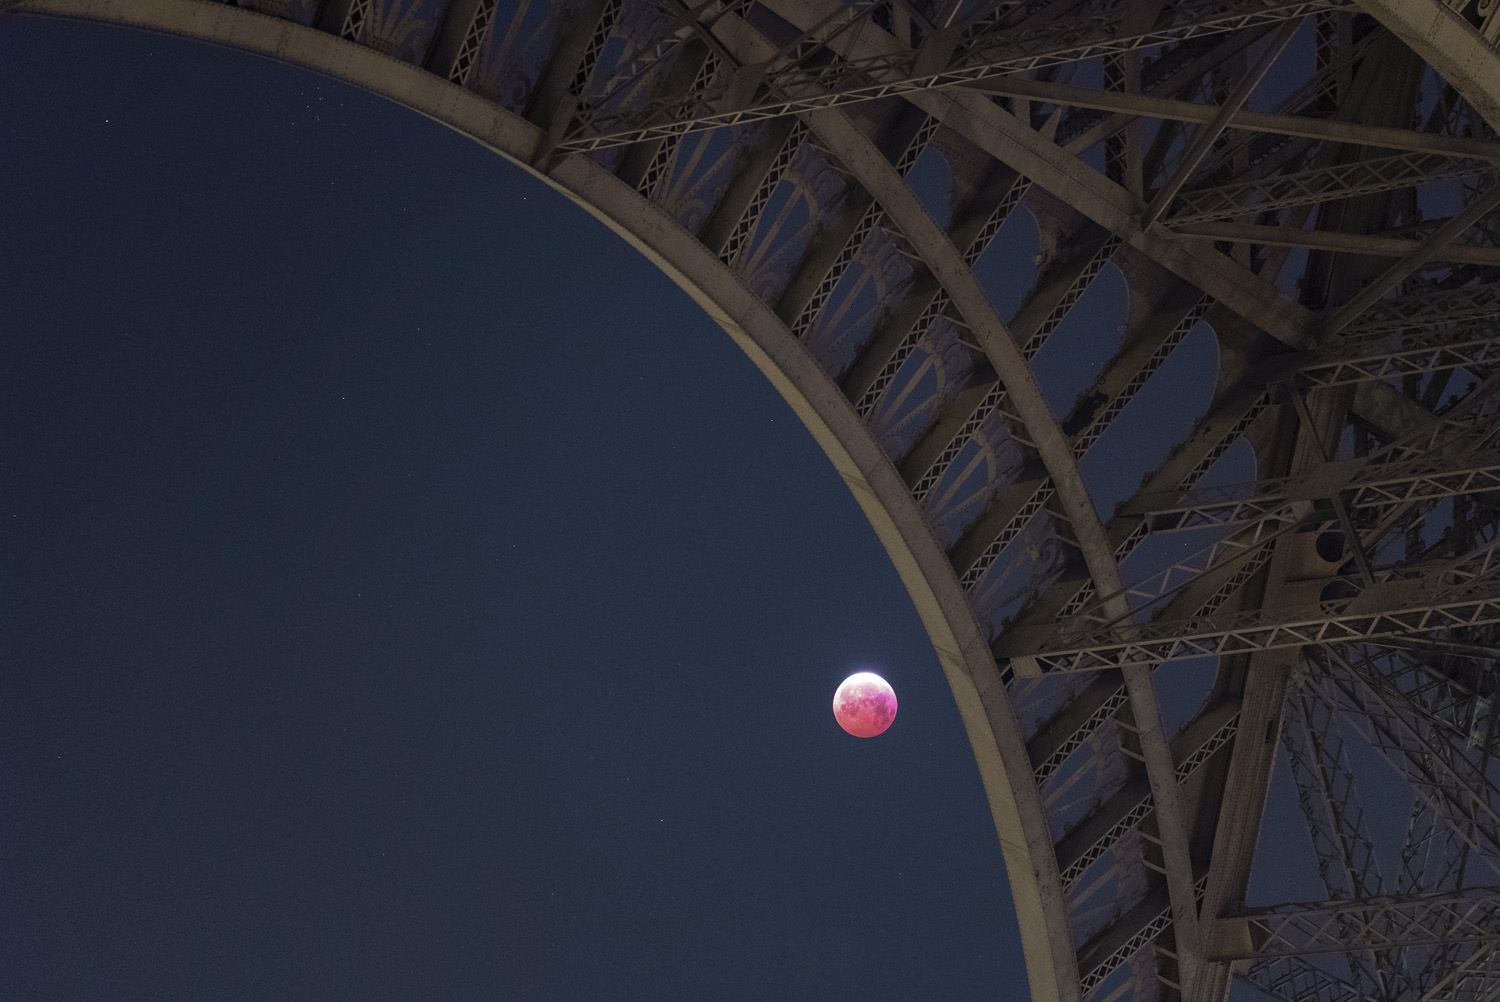 Eclipse du 21 janver depuis Paris